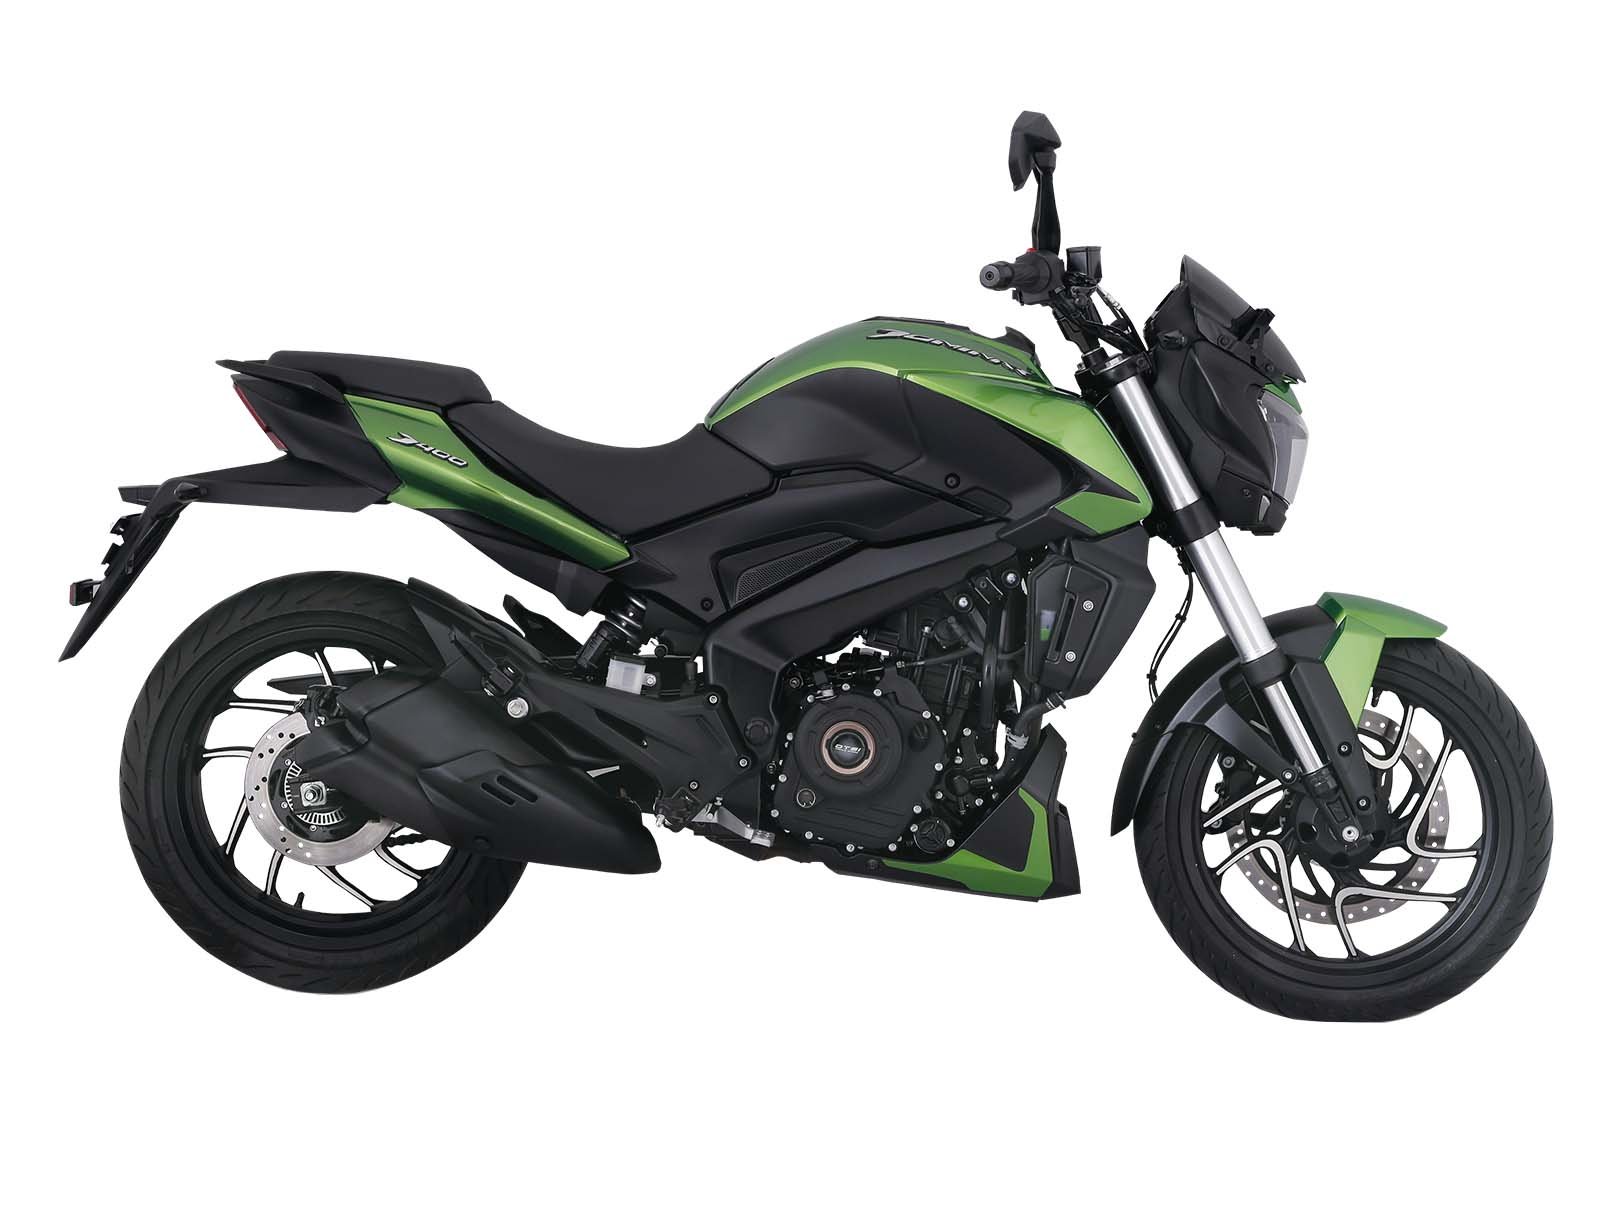 Motocicleta Dominar 400 Ug Verde Bajaj